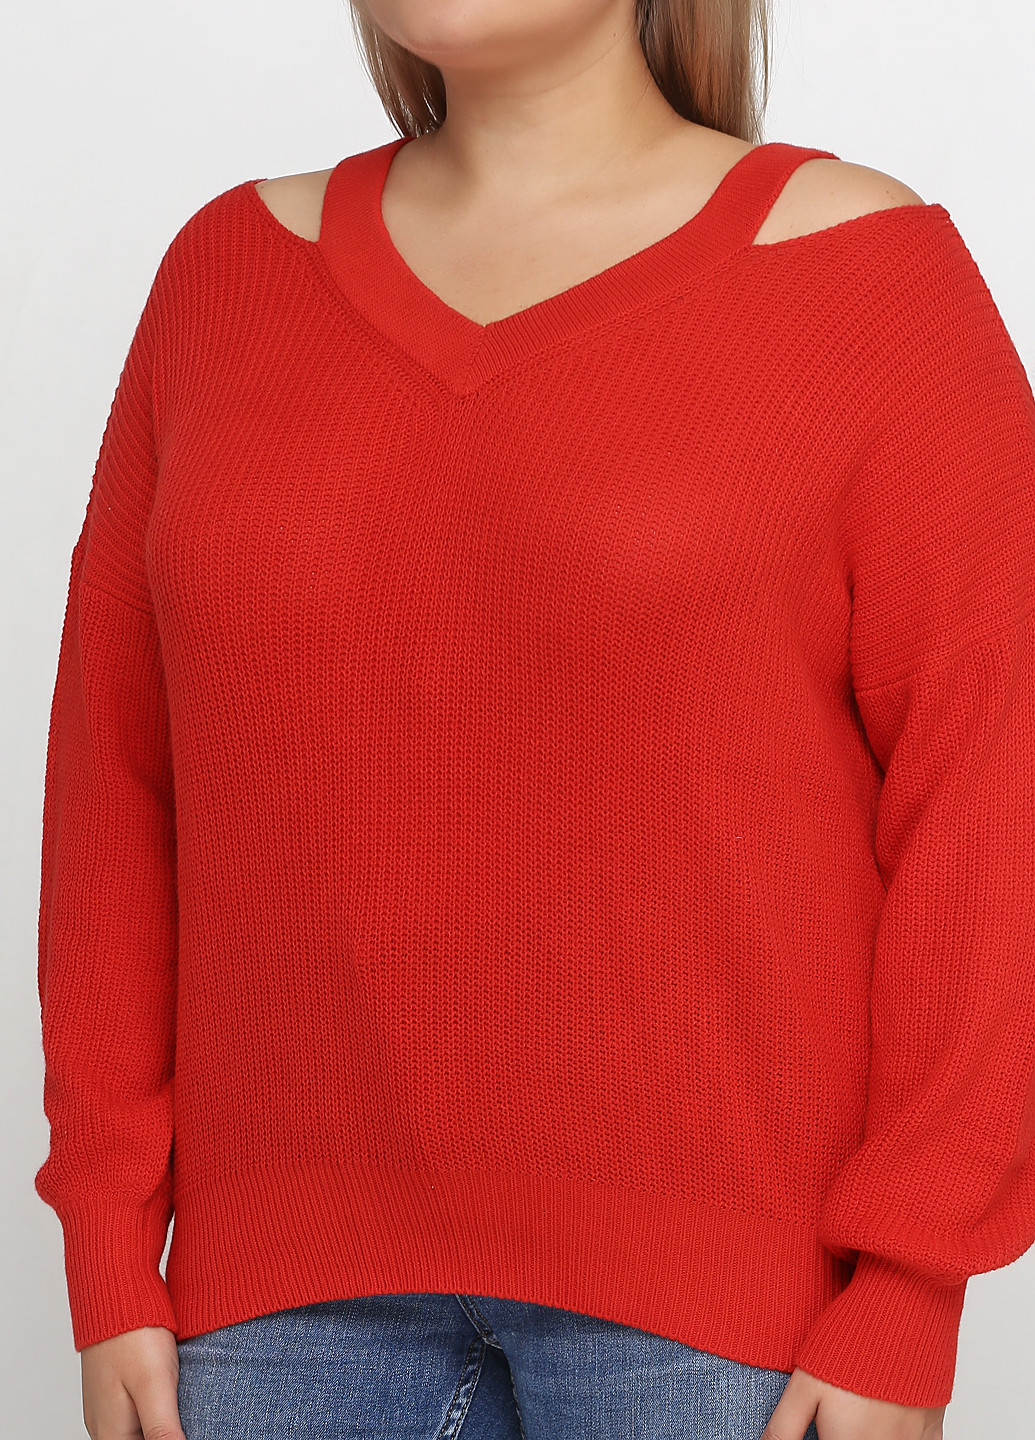 Красный демисезонный пуловер пуловер CHD